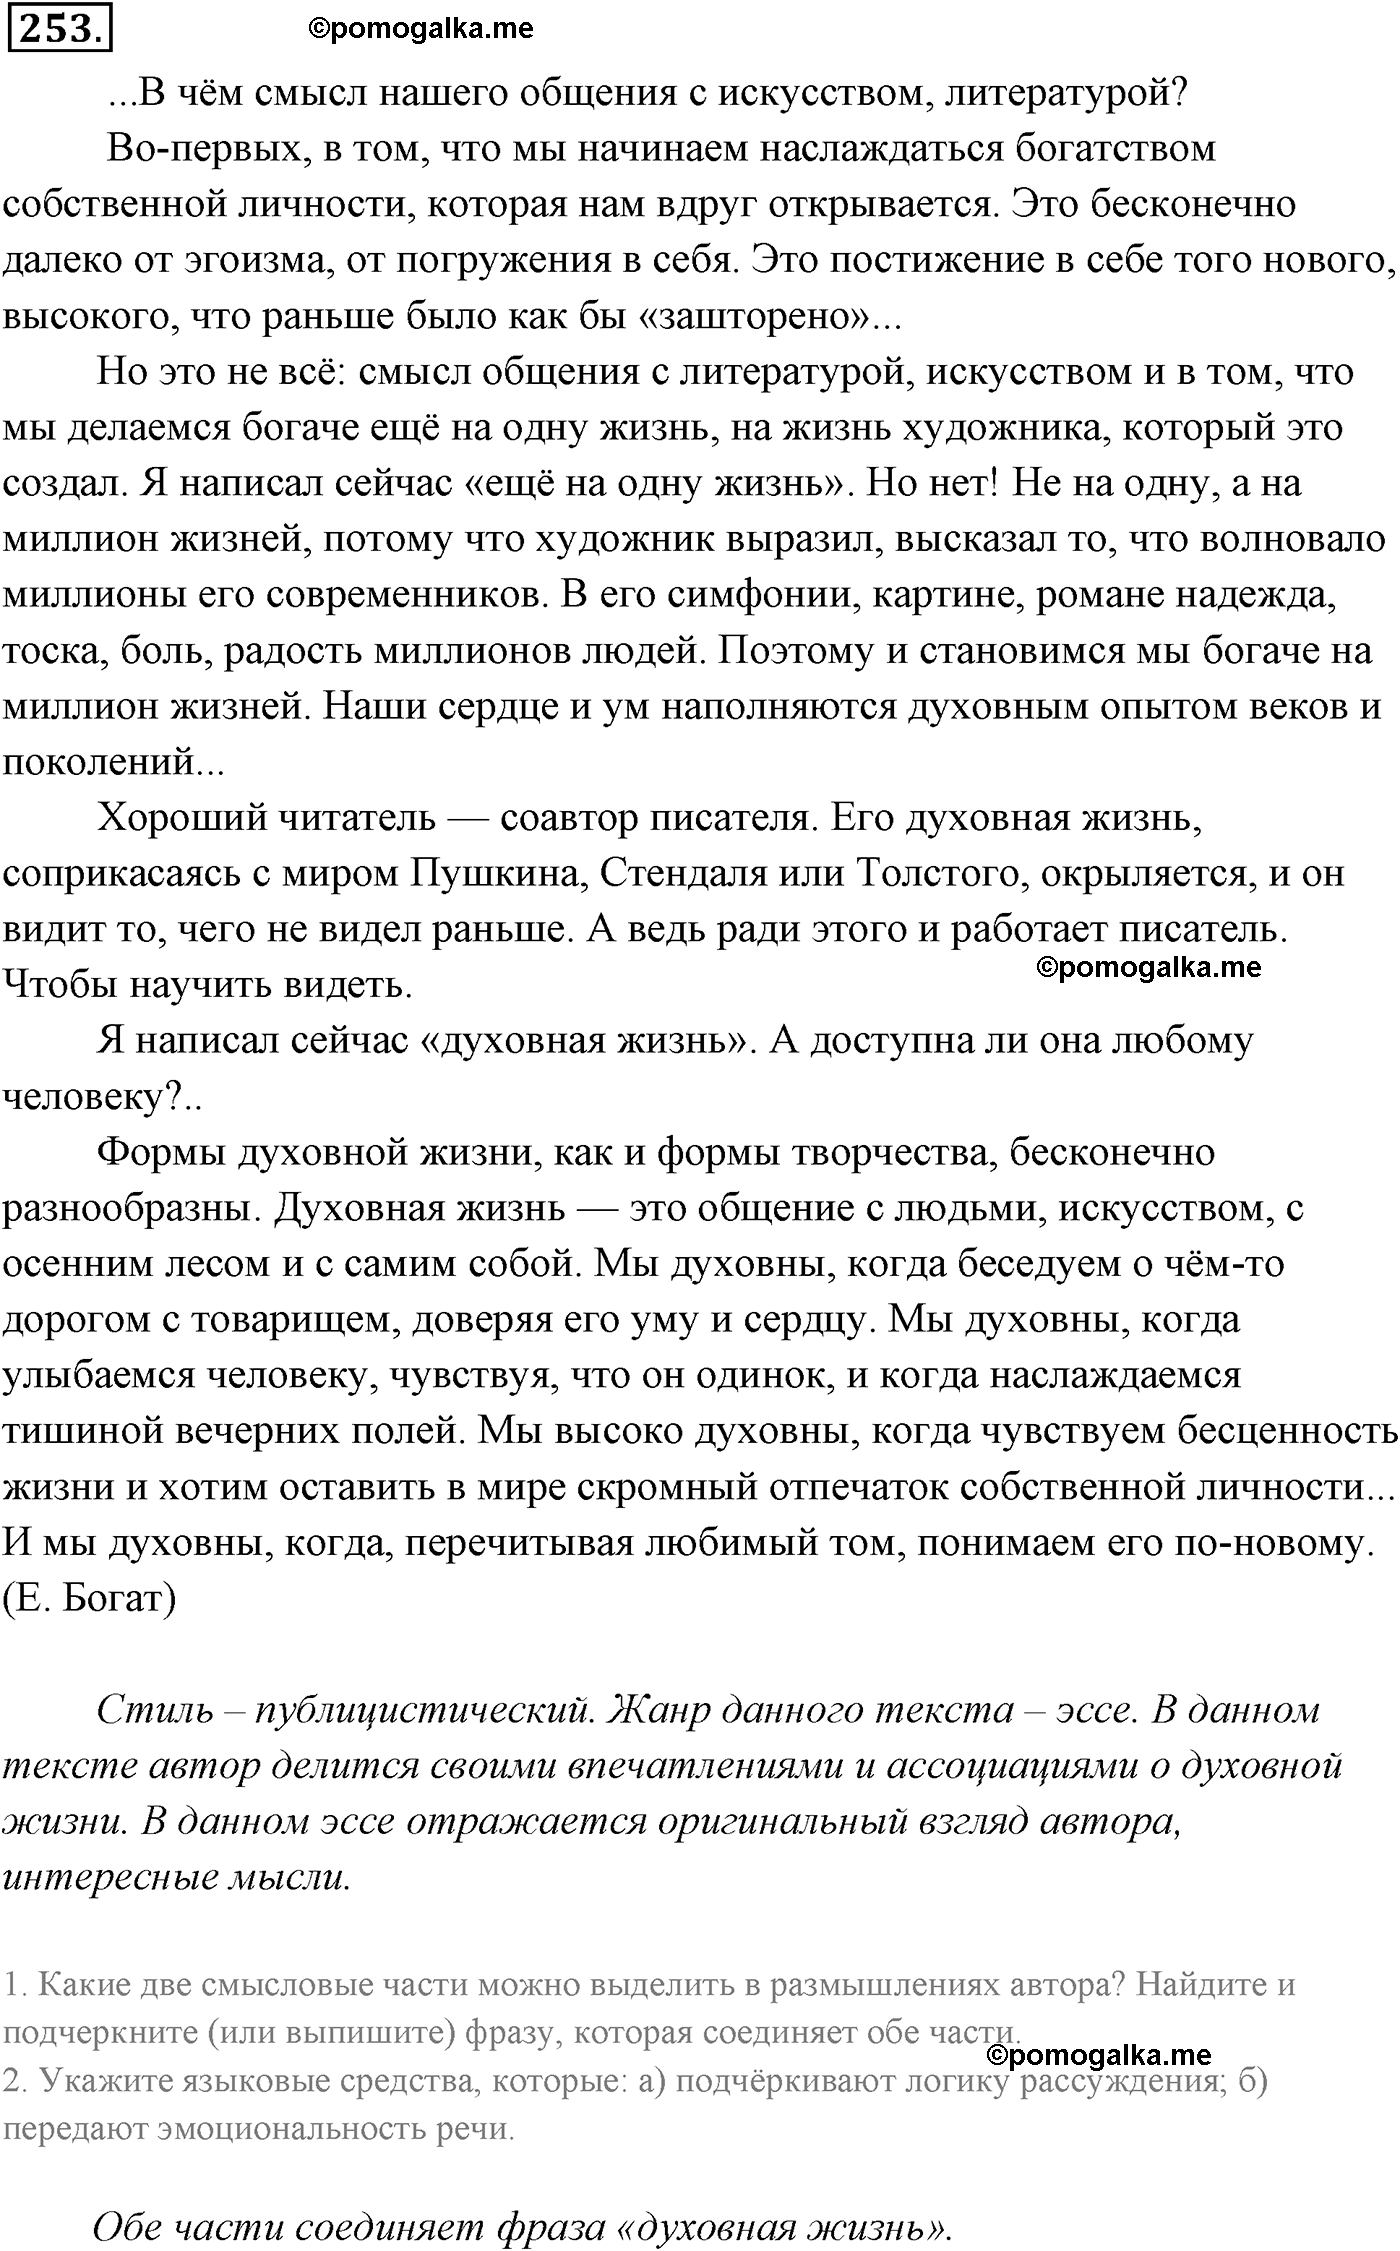 страница 182 номер 253 русский язык 9 класс Разумовская 2011 год